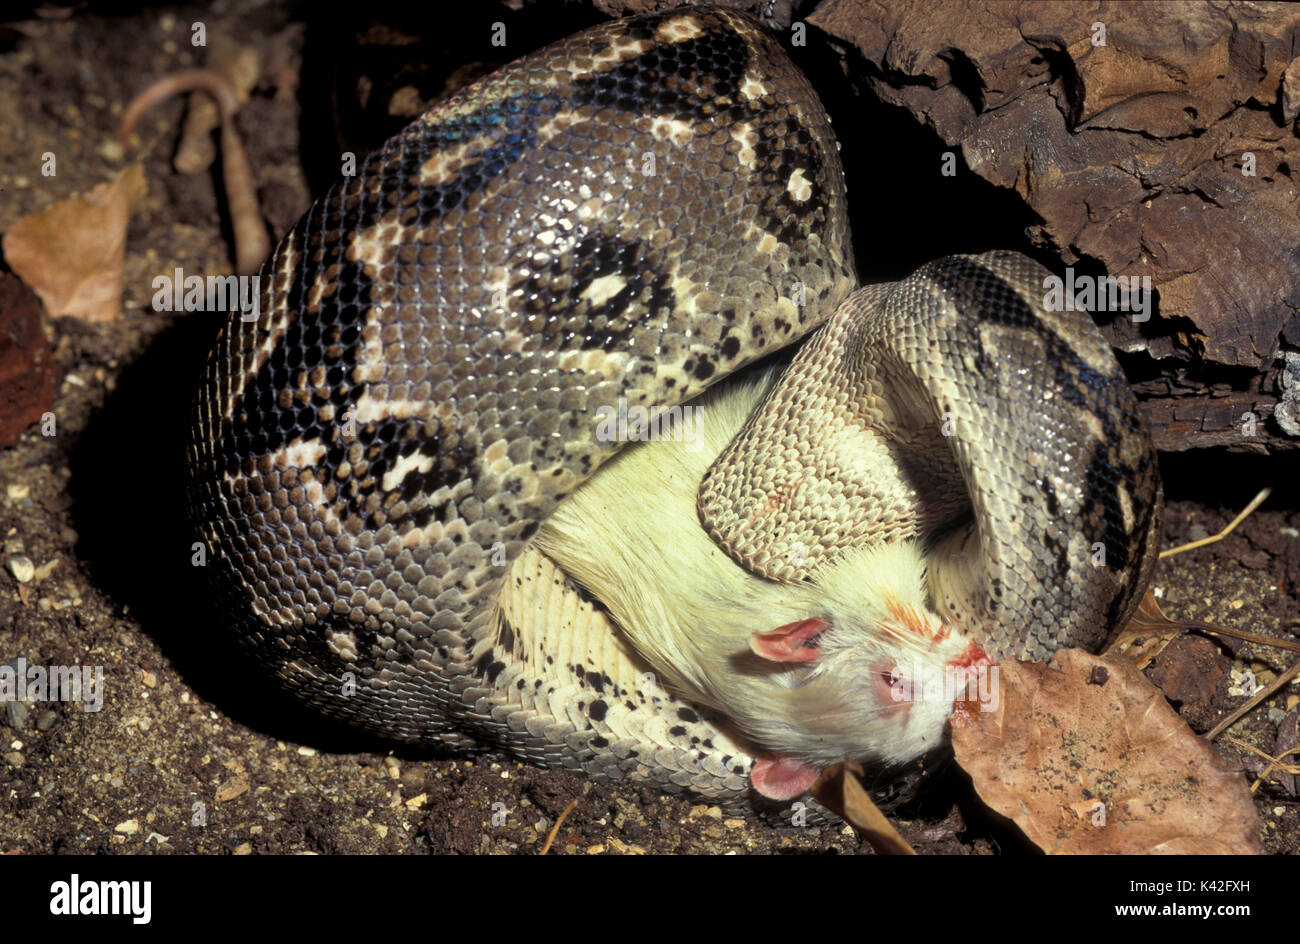 Indiano o birmano serpente Python, Python molurus, Sud Est Asiatico, arricciata attorno, preda di strozzatura, alimentazione captive Foto Stock